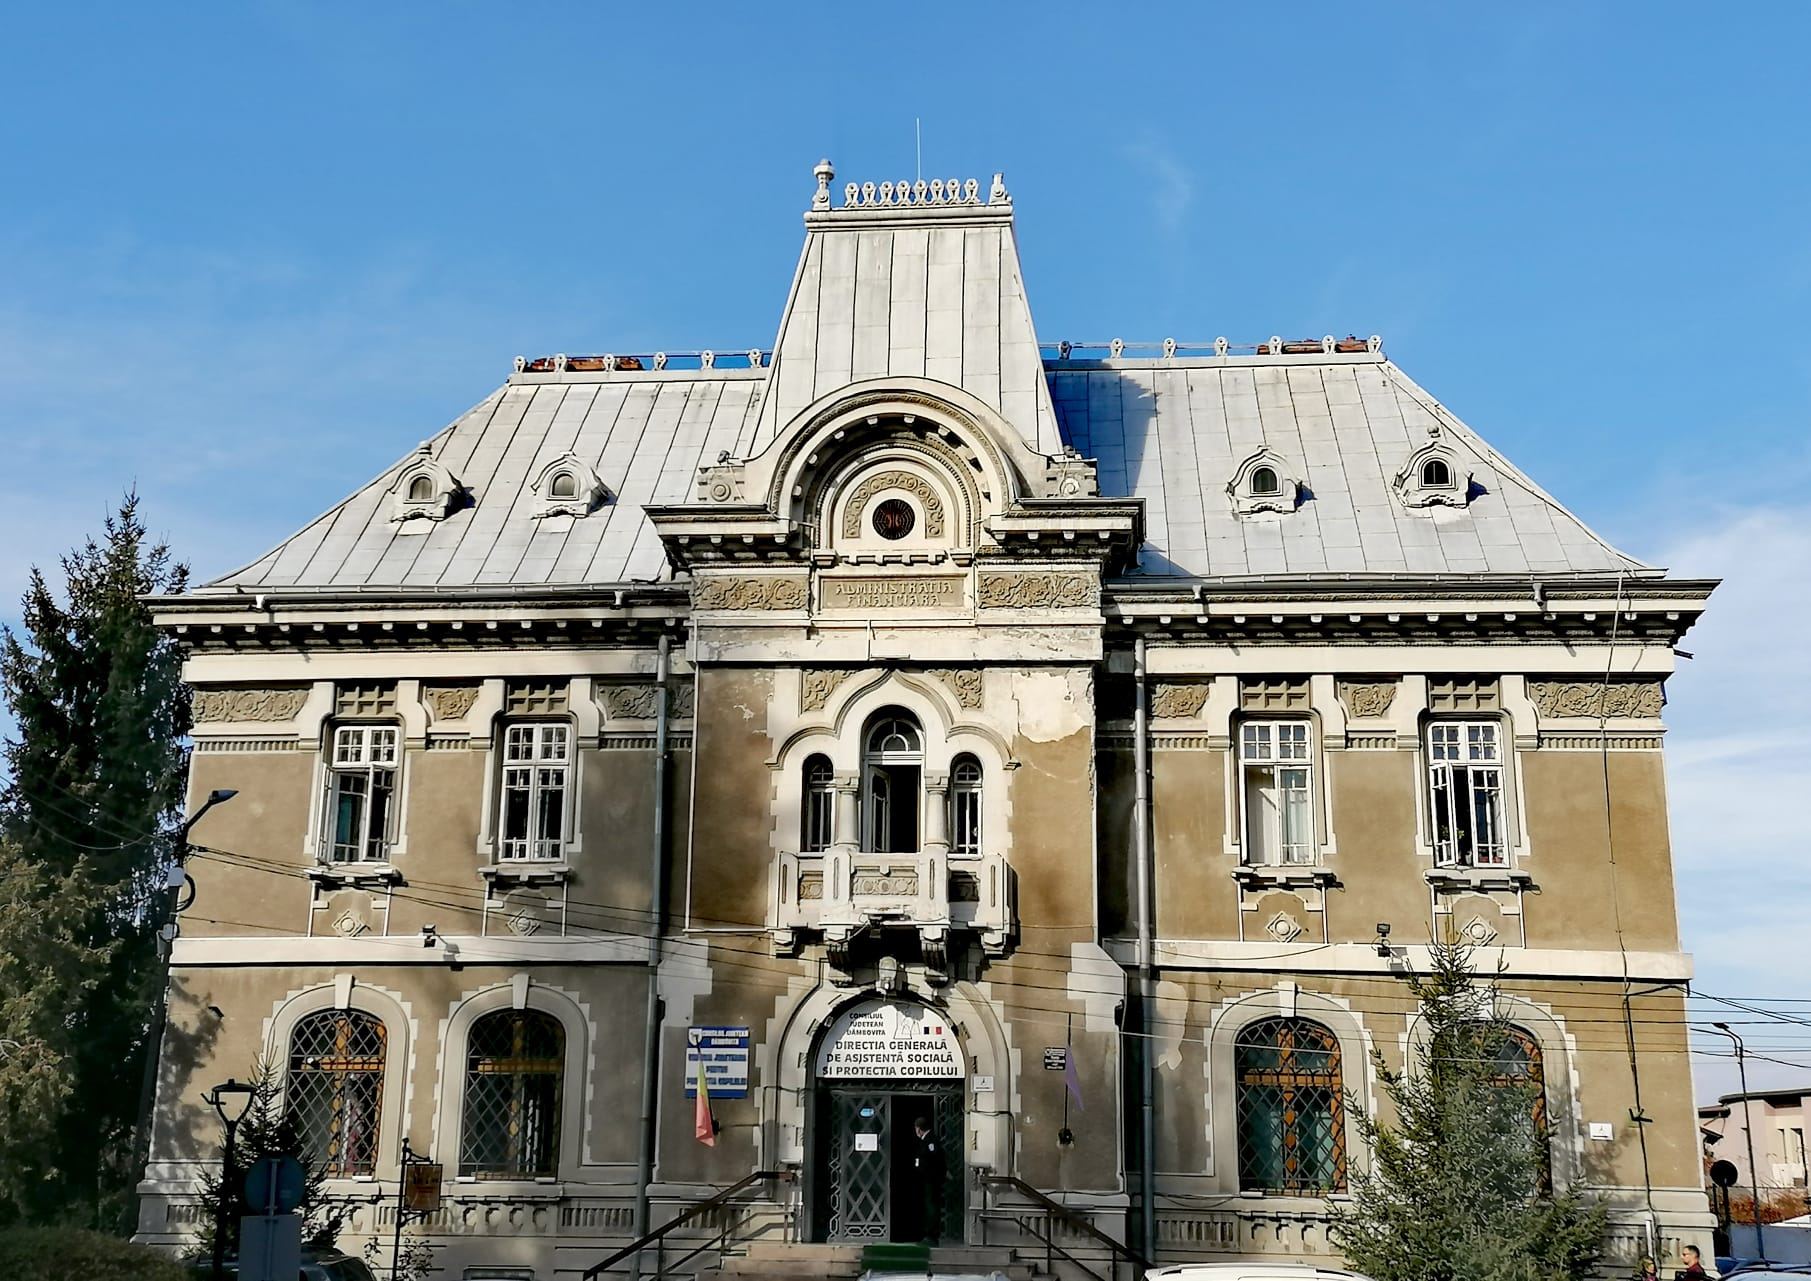 Administrația Financiară din Târgoviște – fosta Bancă Națională